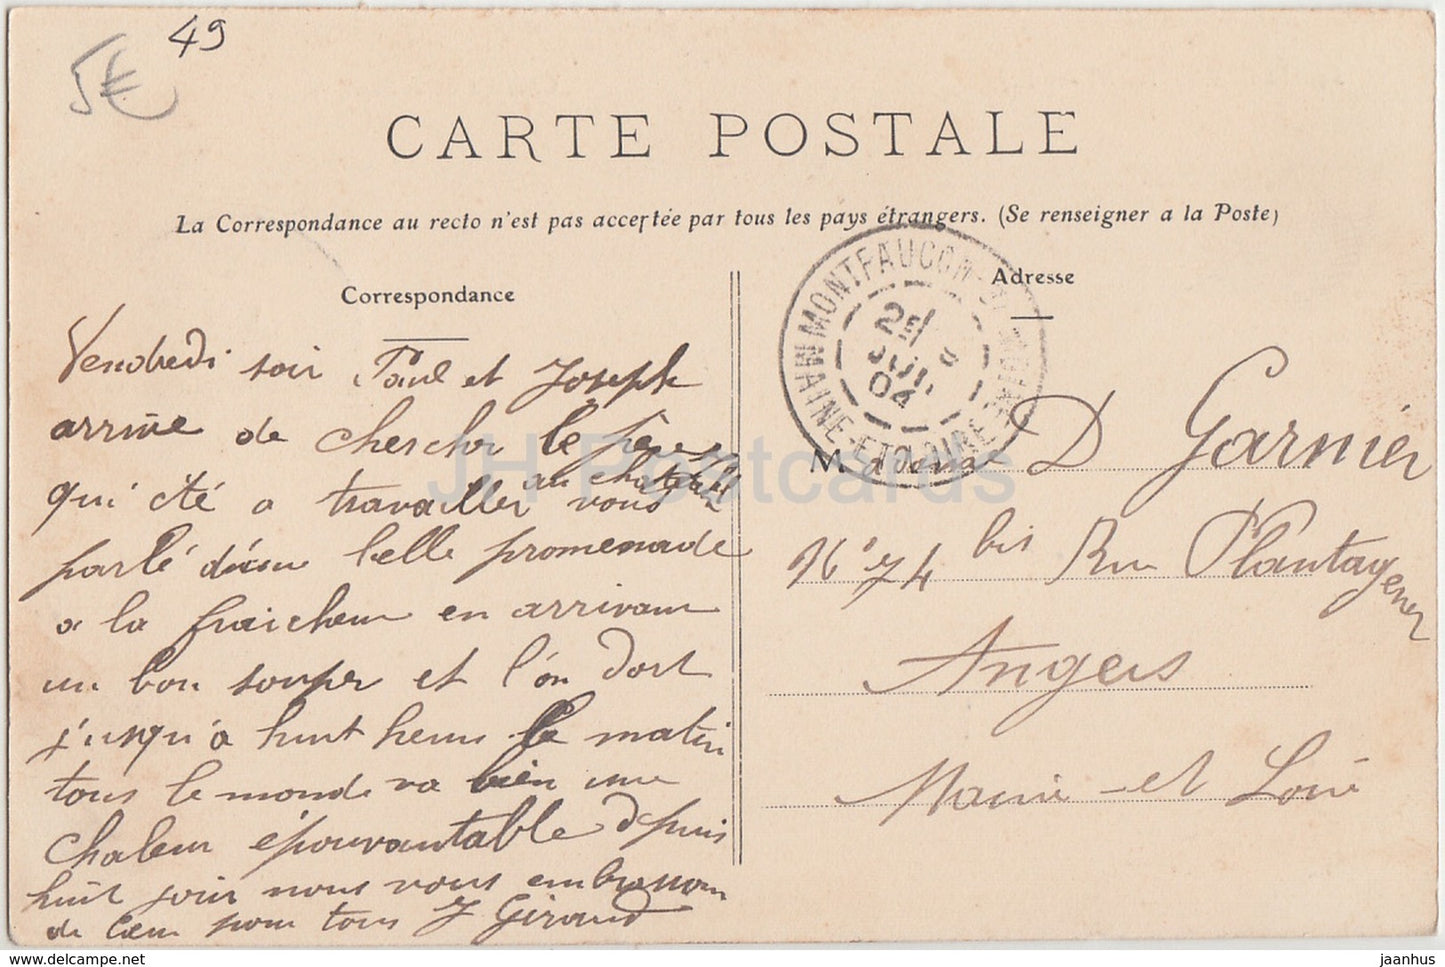 St Crespin - Château de la Septière - château - 54 - 1904 - carte postale ancienne - France - utilisé